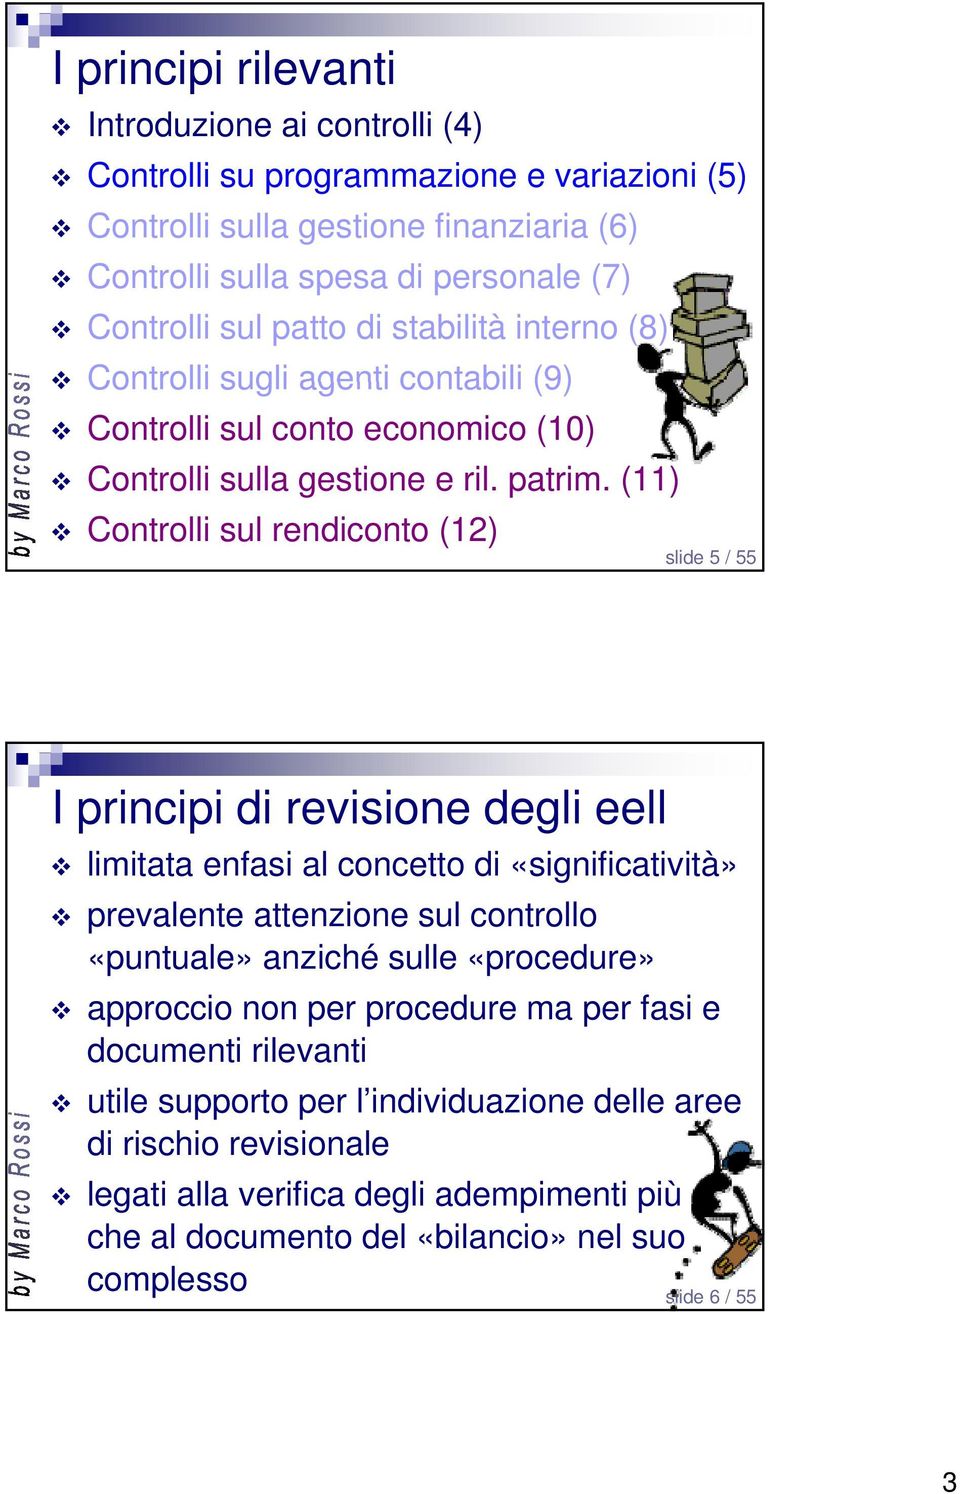 (11) Controlli sul rendiconto (12) slide 5 / 55 limitata enfasi al concetto di «significatività» prevalente attenzione sul controllo «puntuale» anziché sulle «procedure» approccio non